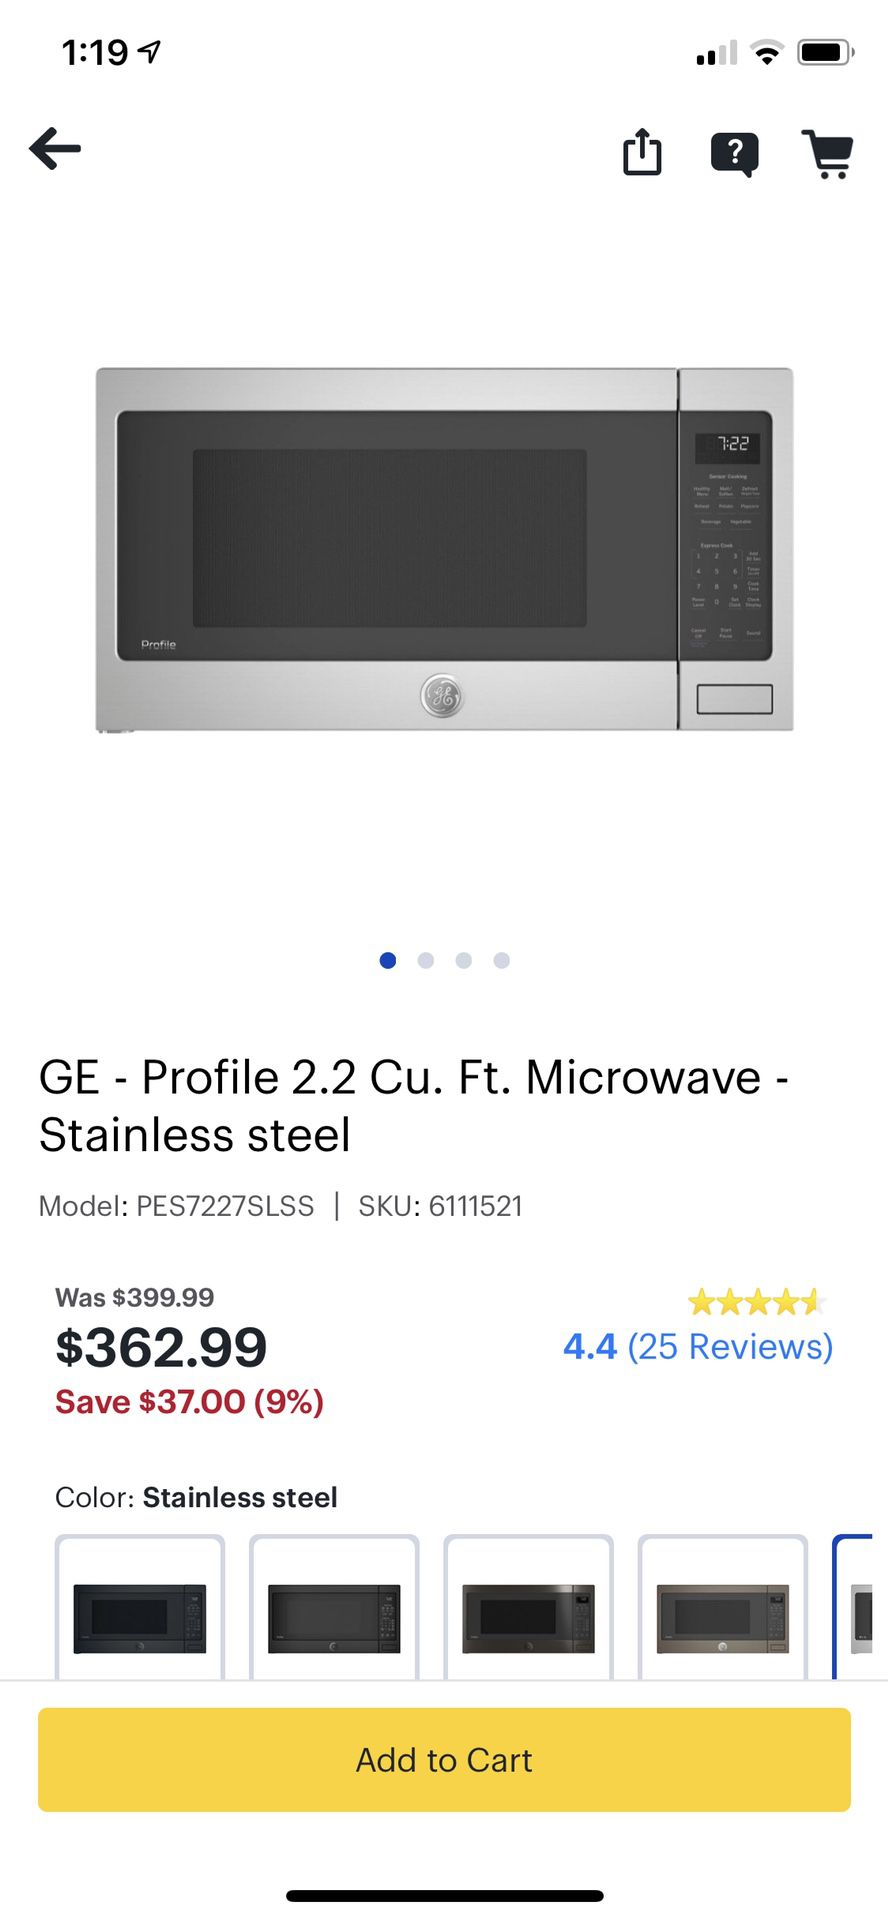 GE profile 2.2 CU. FT. microwave in black